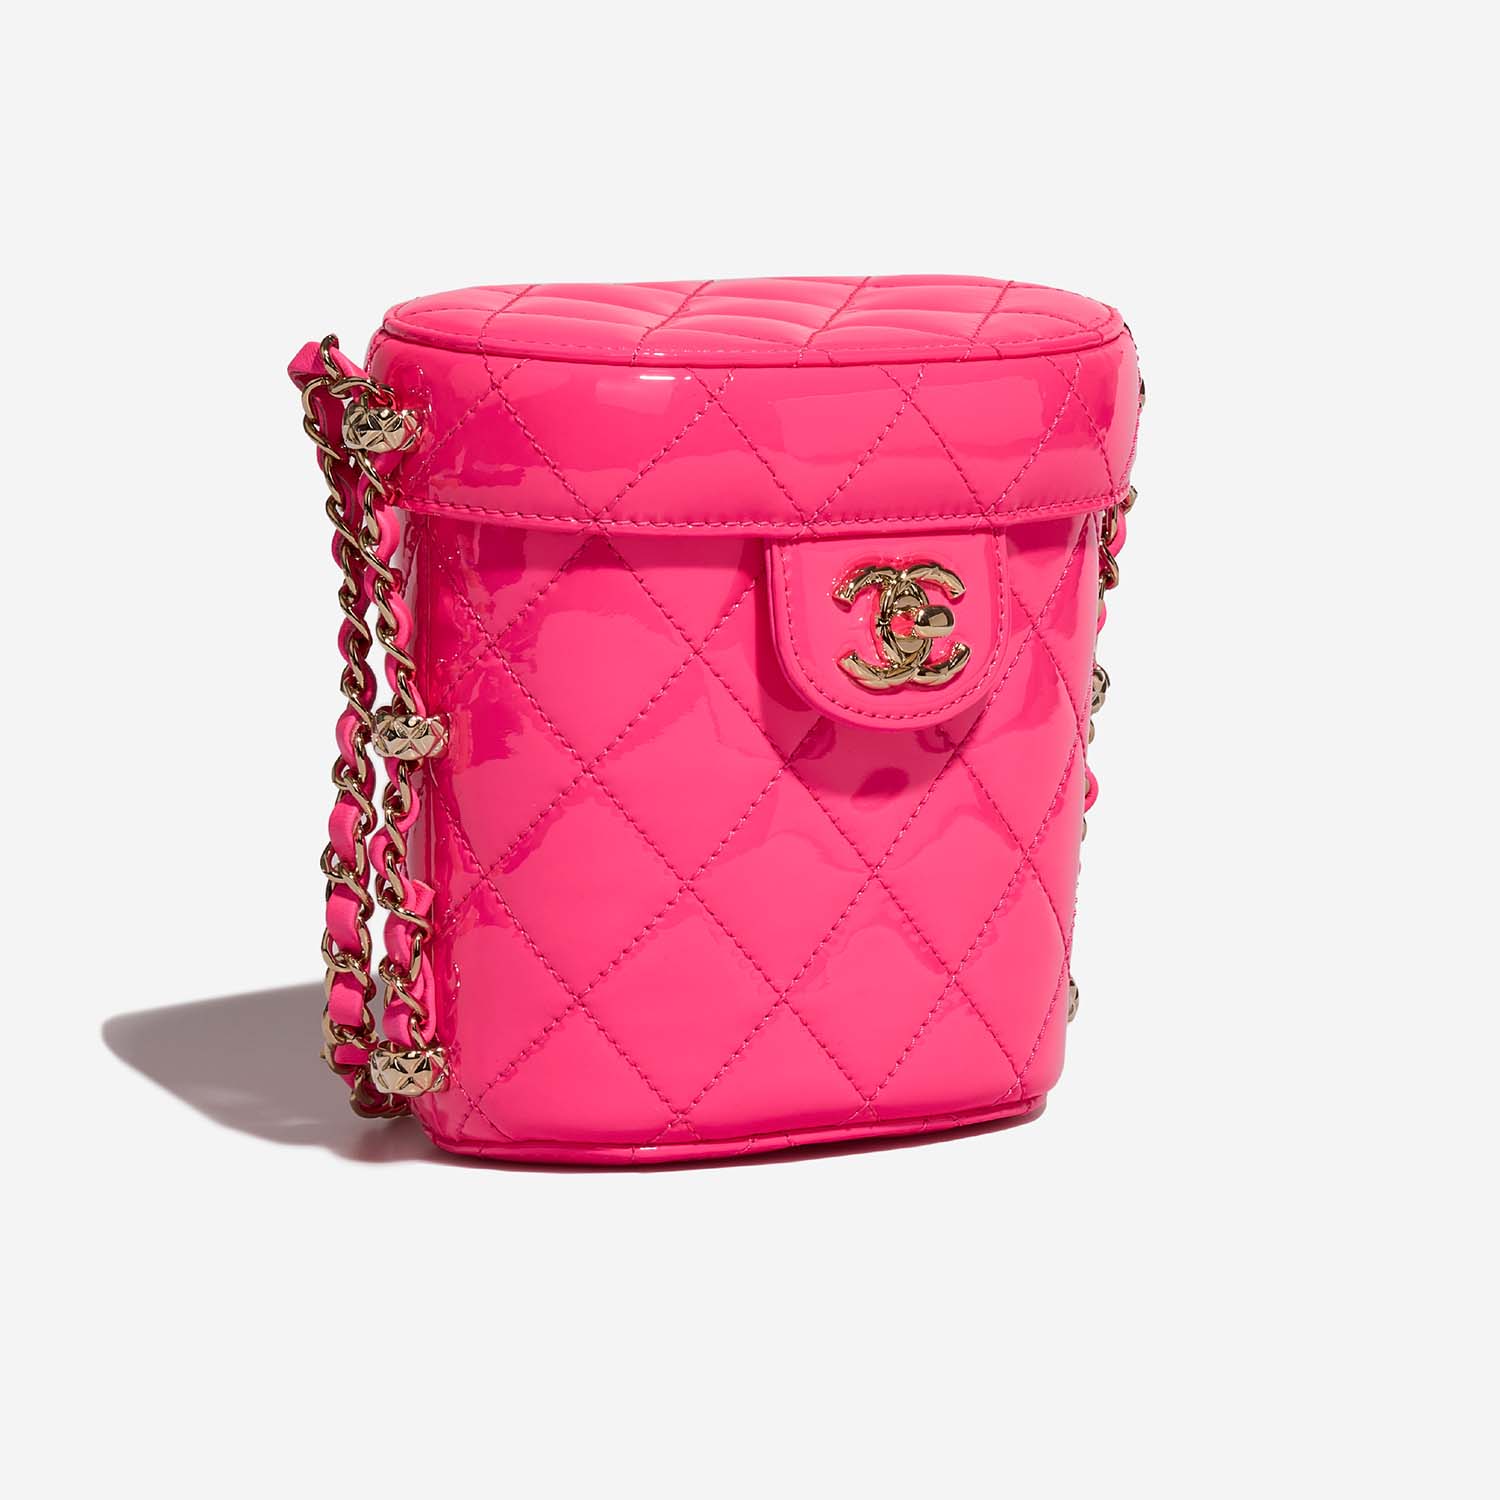 Chanel Vanity Small NeonPink 6SF S | Verkaufen Sie Ihre Designer-Tasche auf Saclab.com